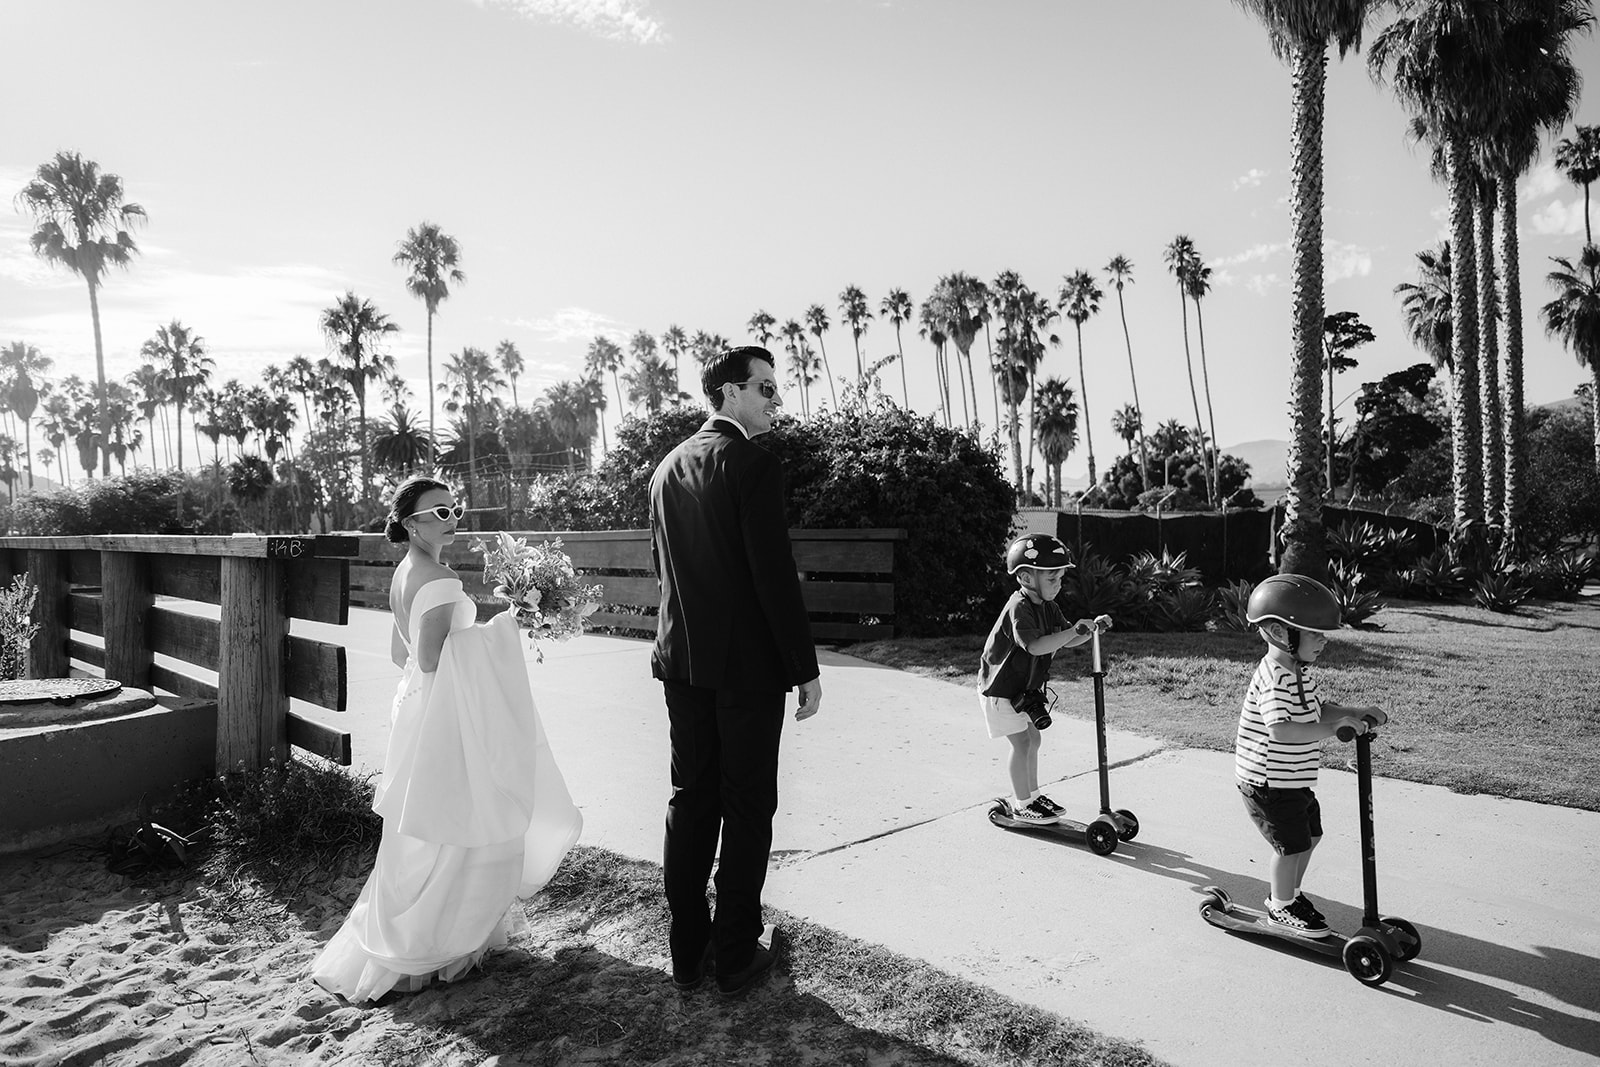 Bride and groom walking on the sidewalk in Santa Barbara by the beach. 